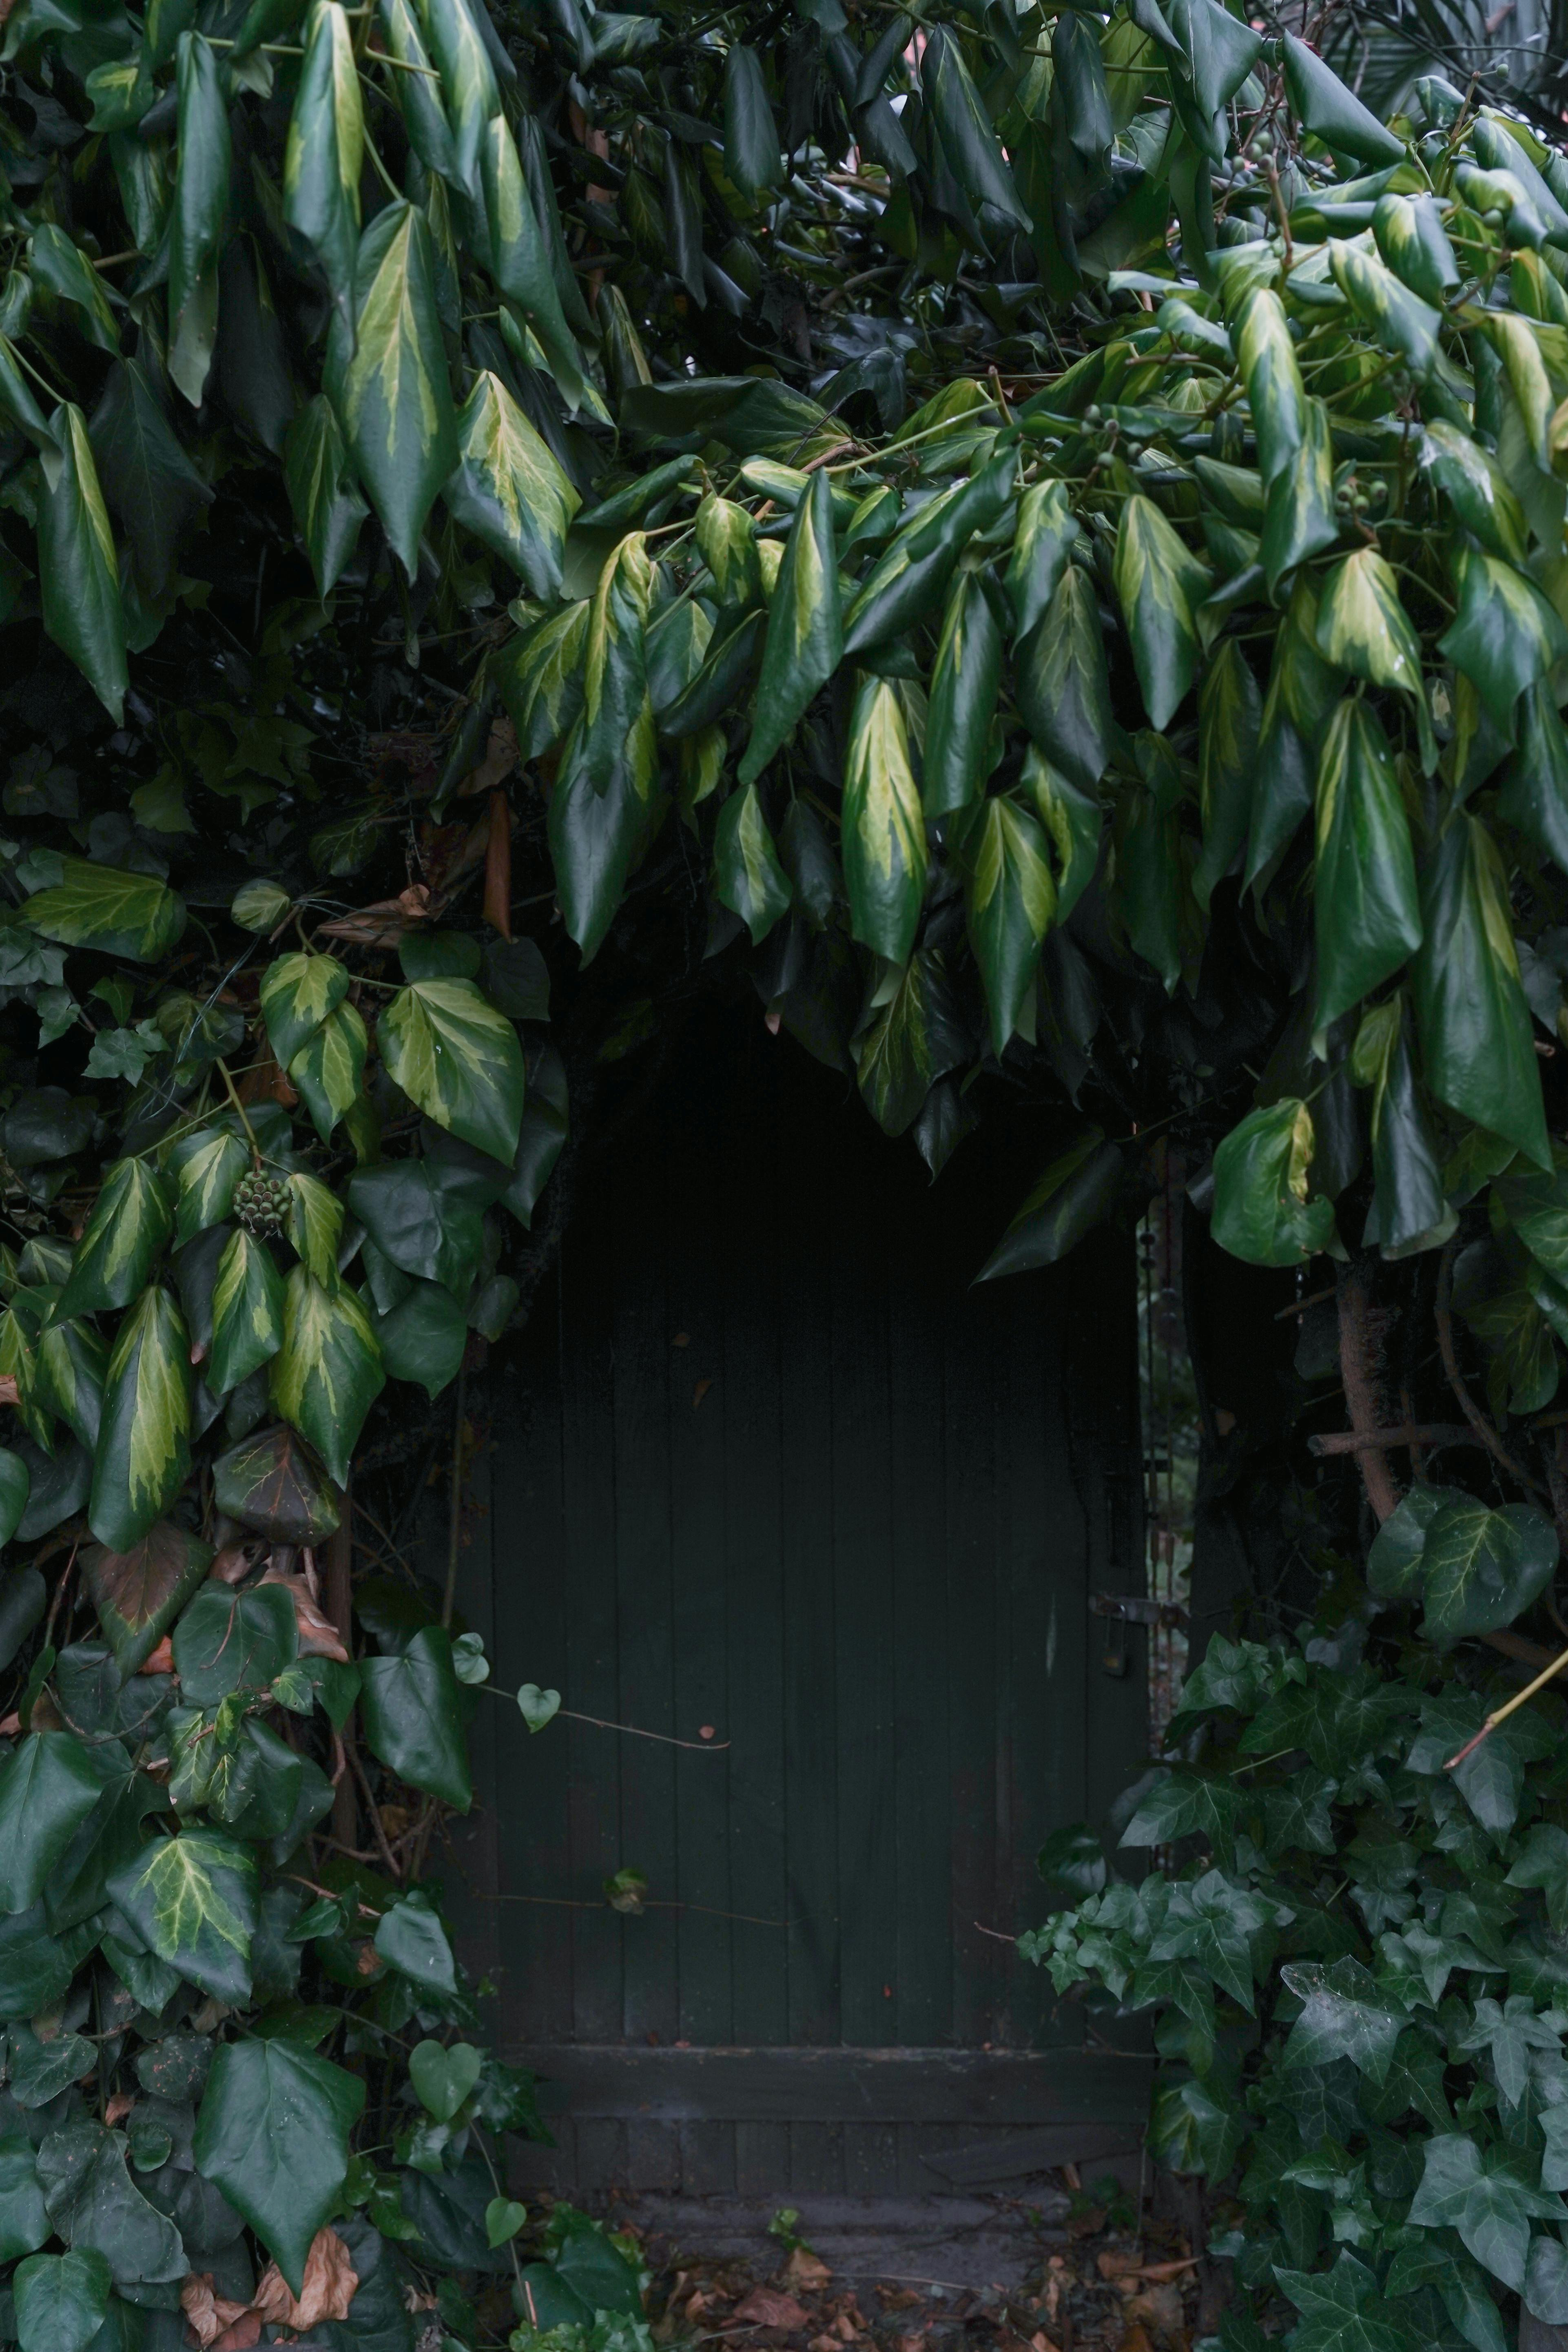 Entrance to a hidden cellar | Source: Pexels